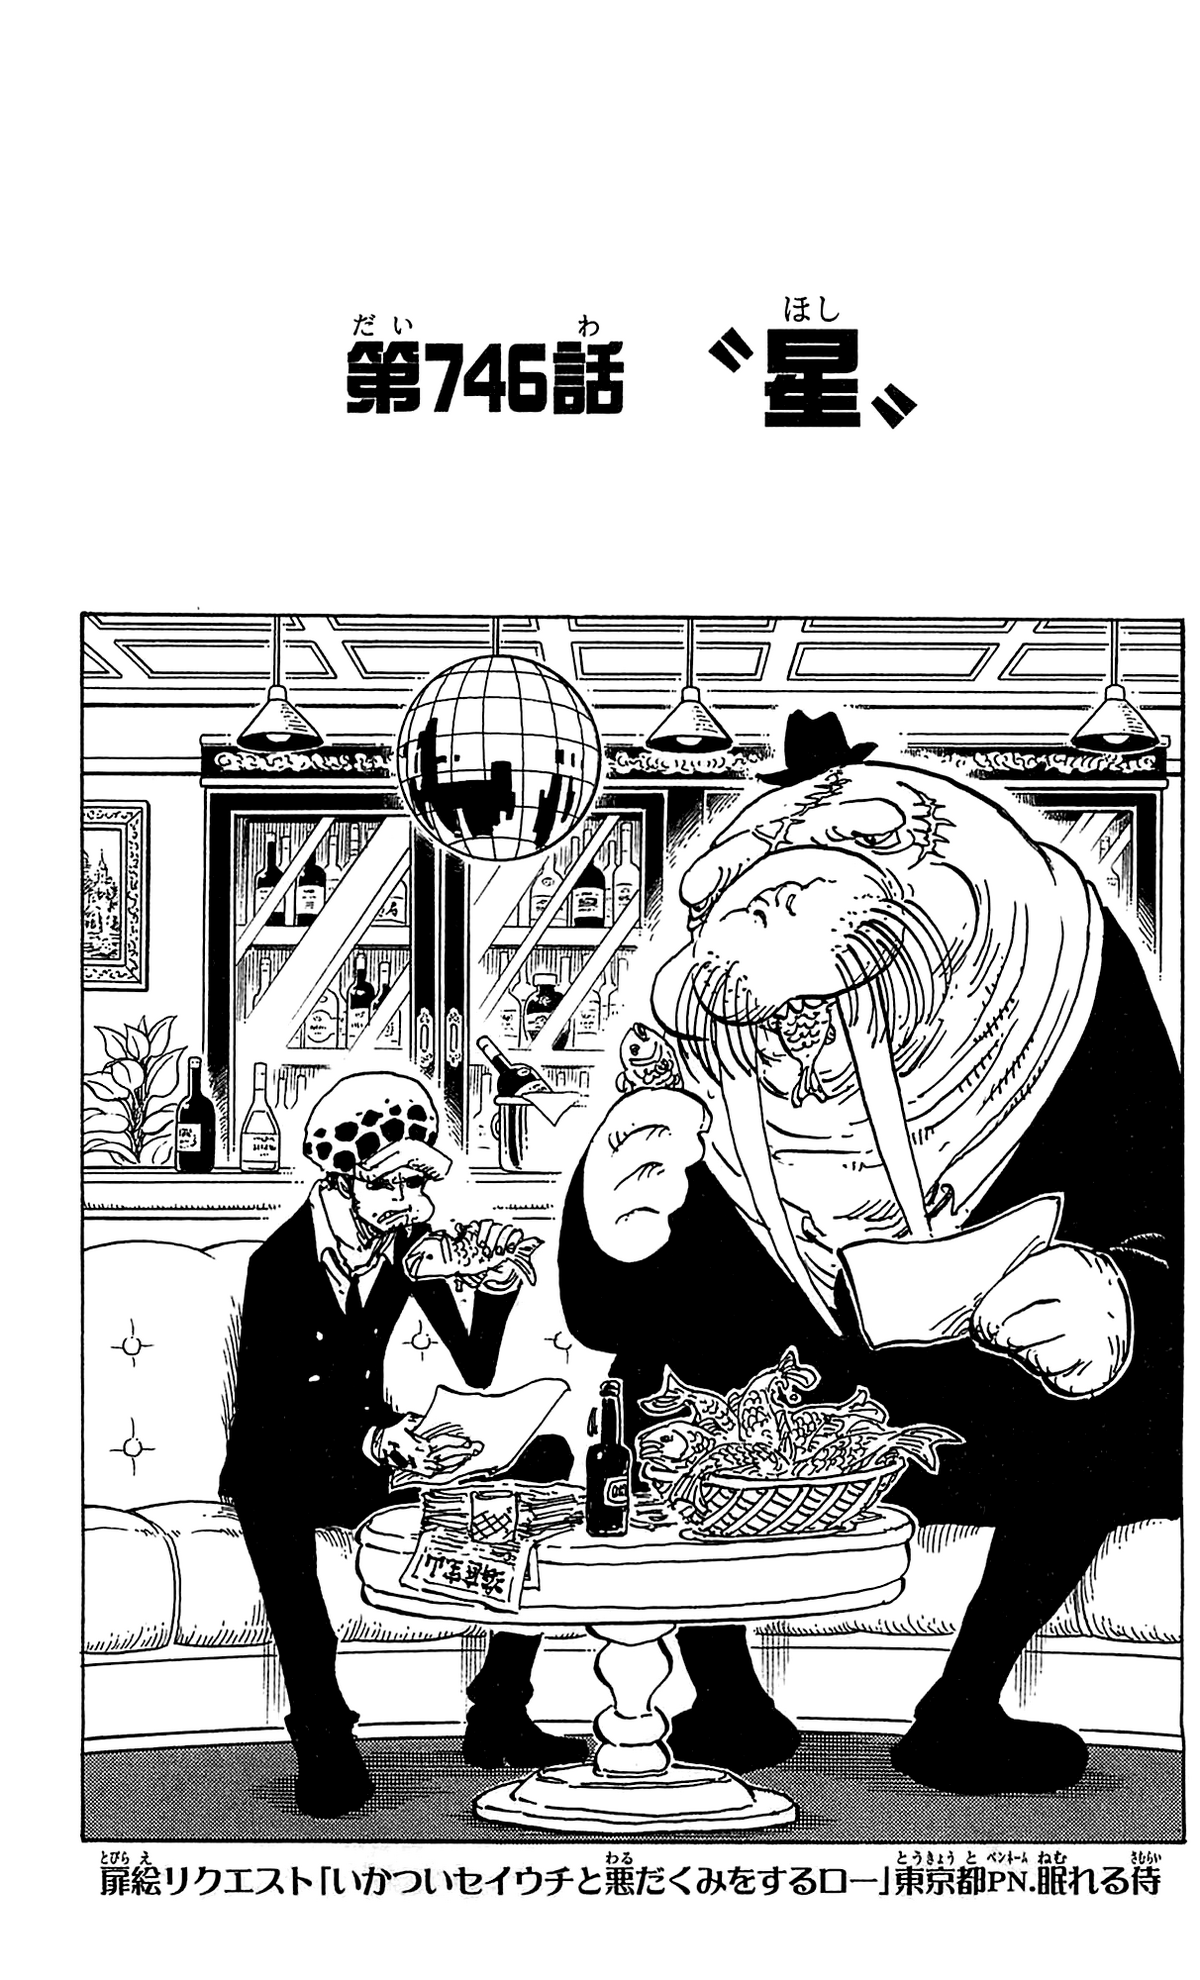 Leitor de Mangá, One Piece Ex - Página 770